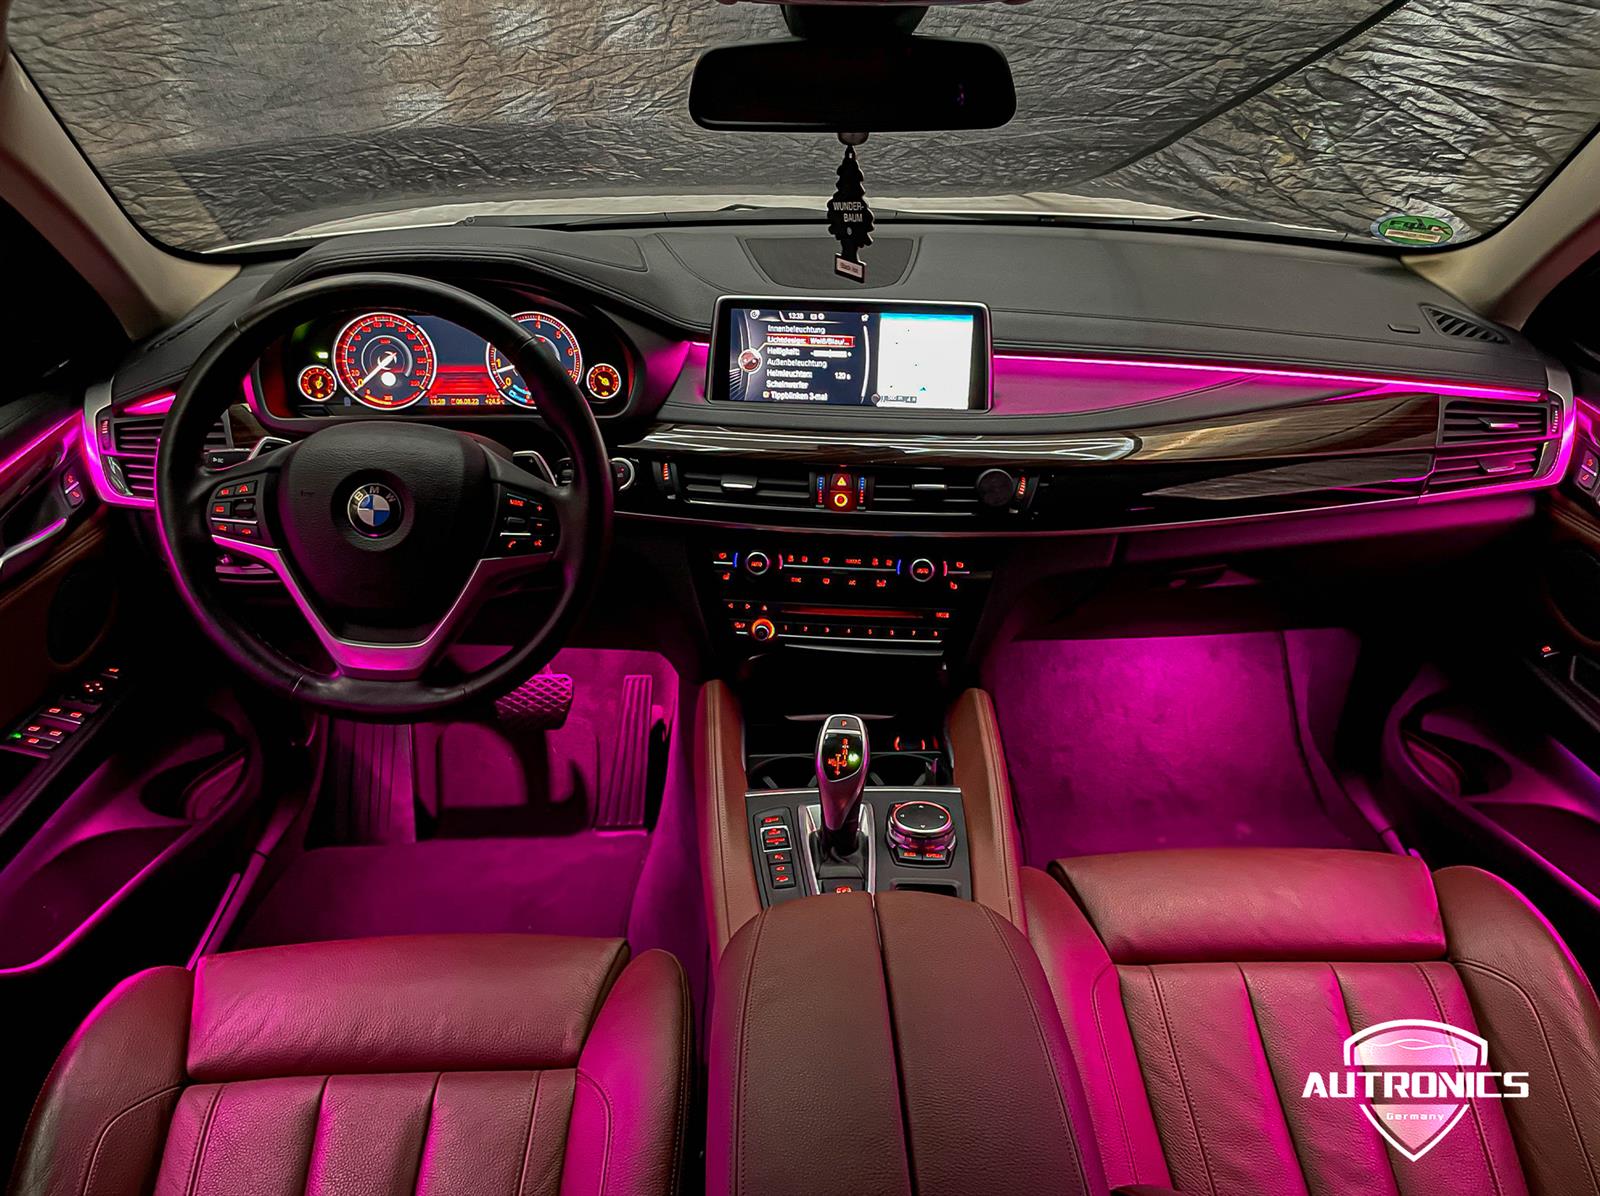 Ambientebeleuchtung Nachrüsten im Auto Innenraumbeleuchtung Beleuchtung  geeignet für BMW X5 & X6 F15 F16 - Autronics Inhouse